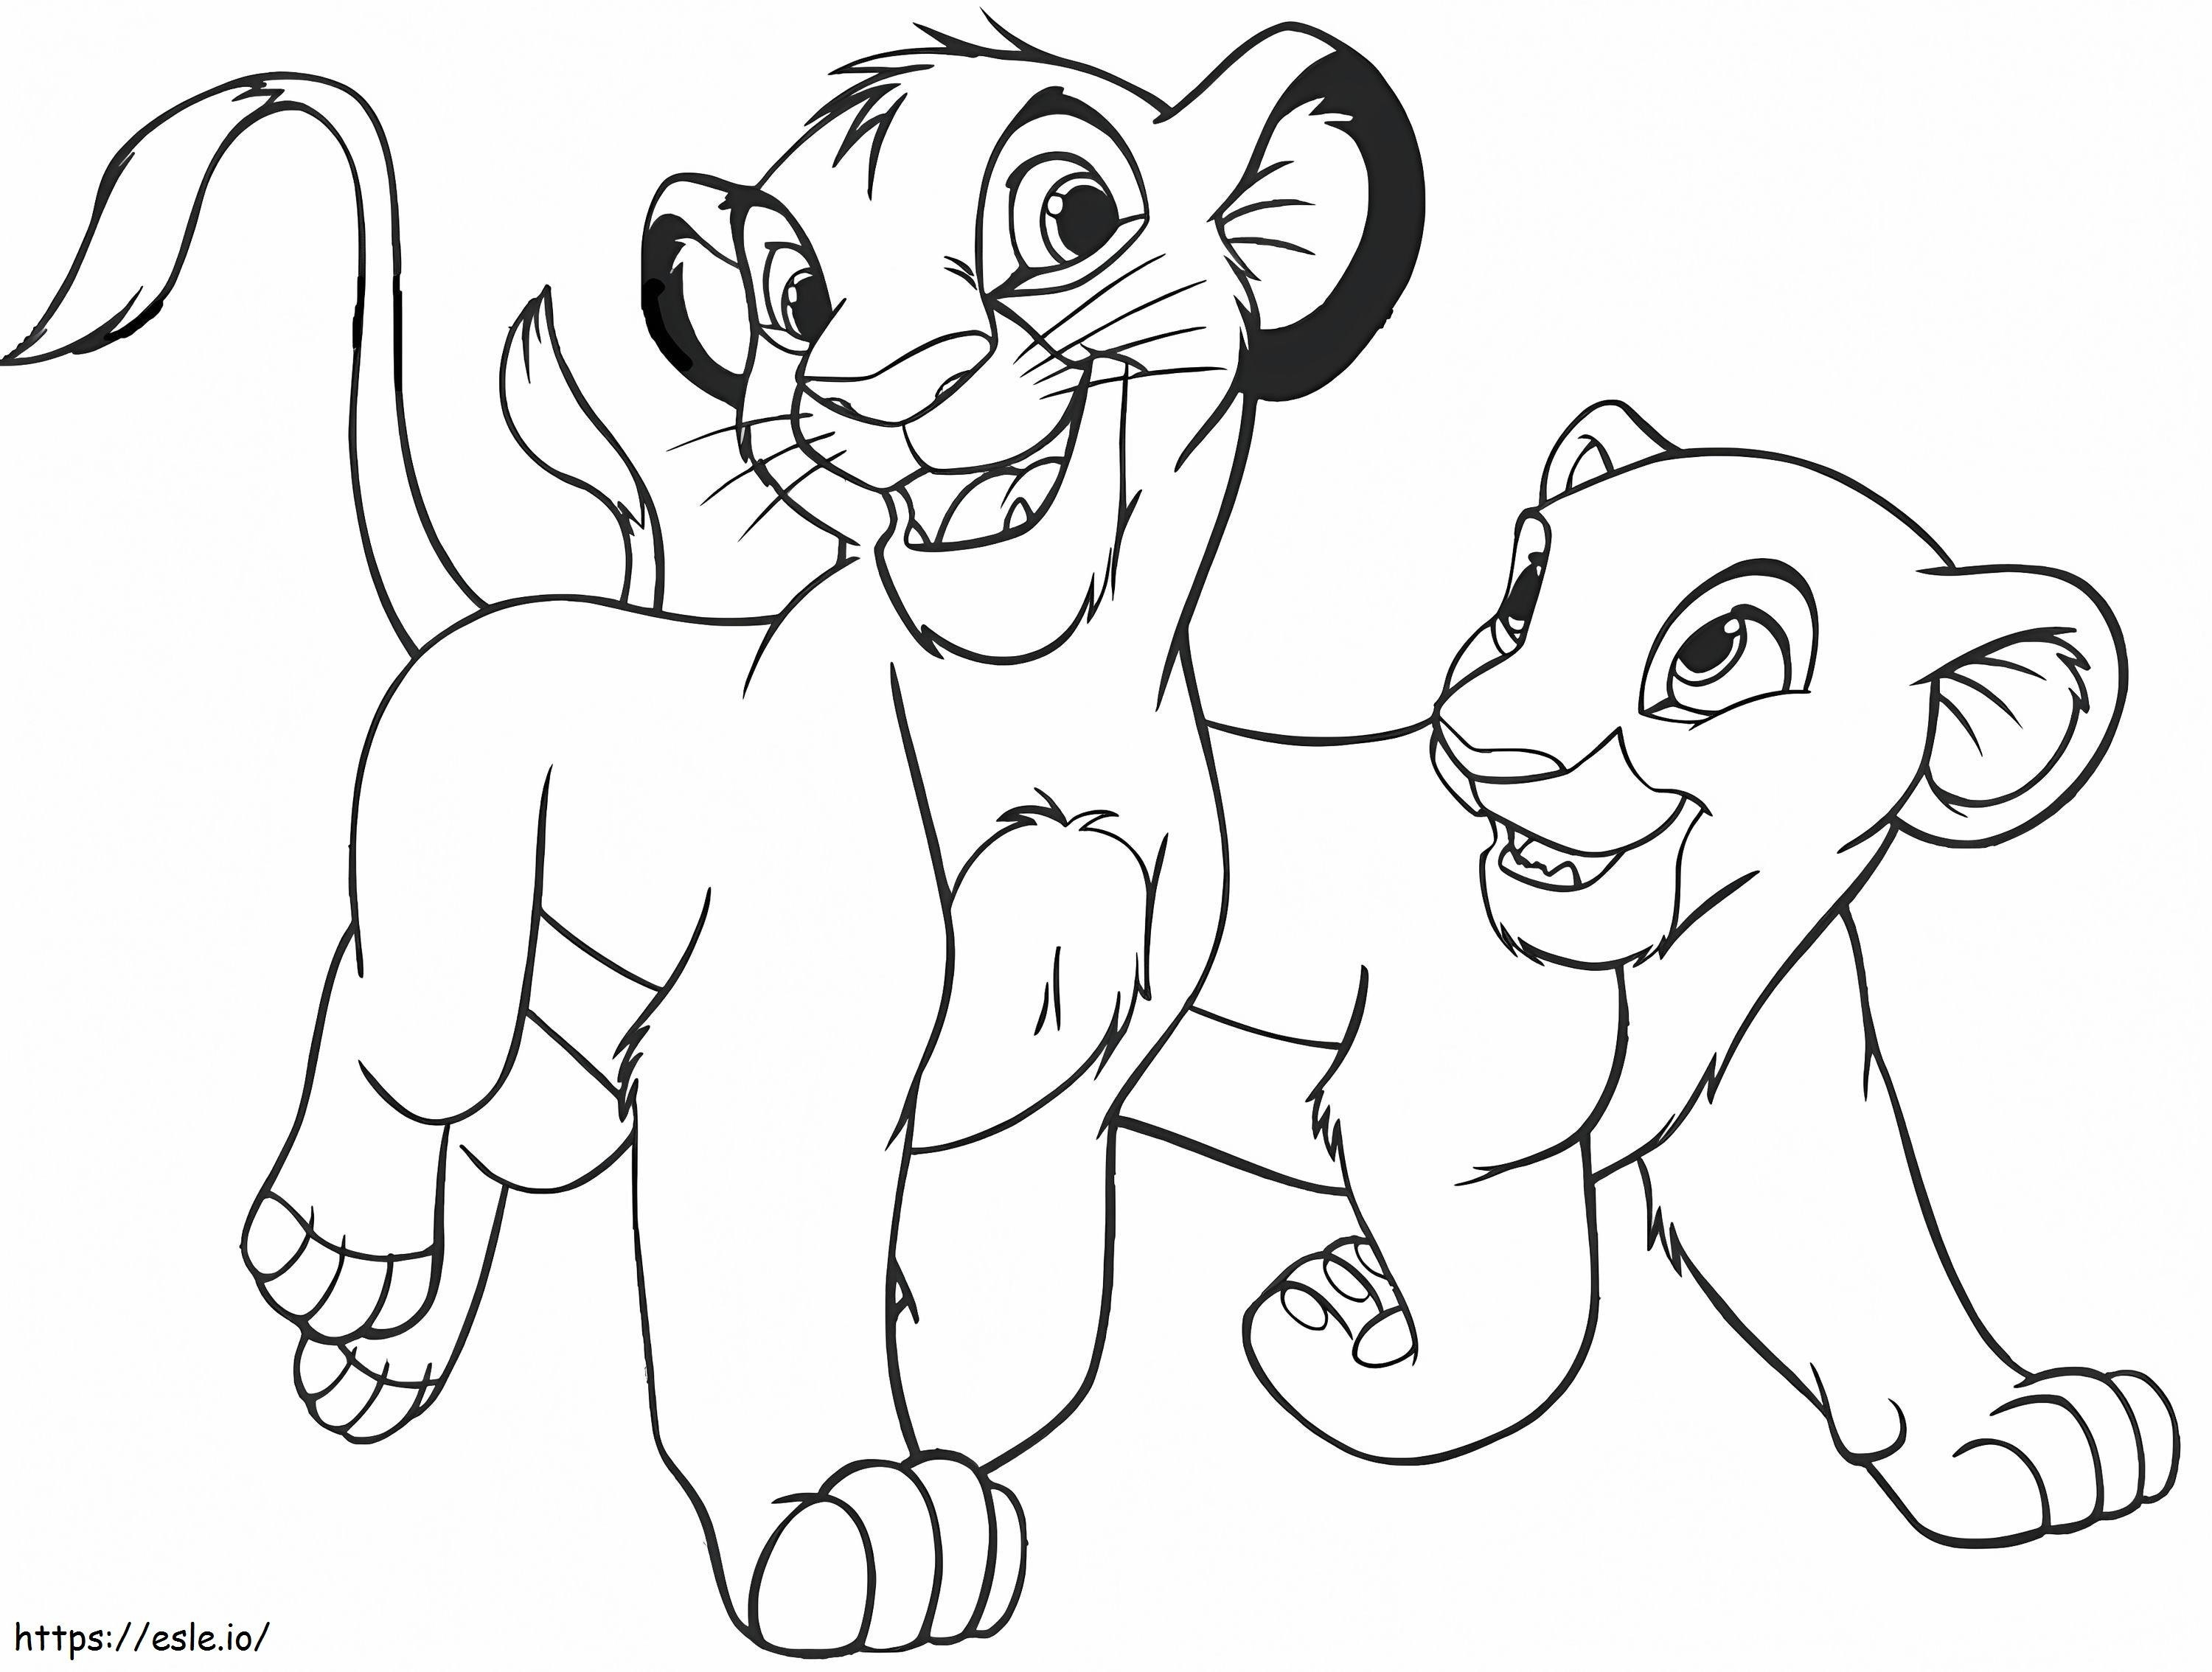 1560501175 Simba And Kiara A4 coloring page